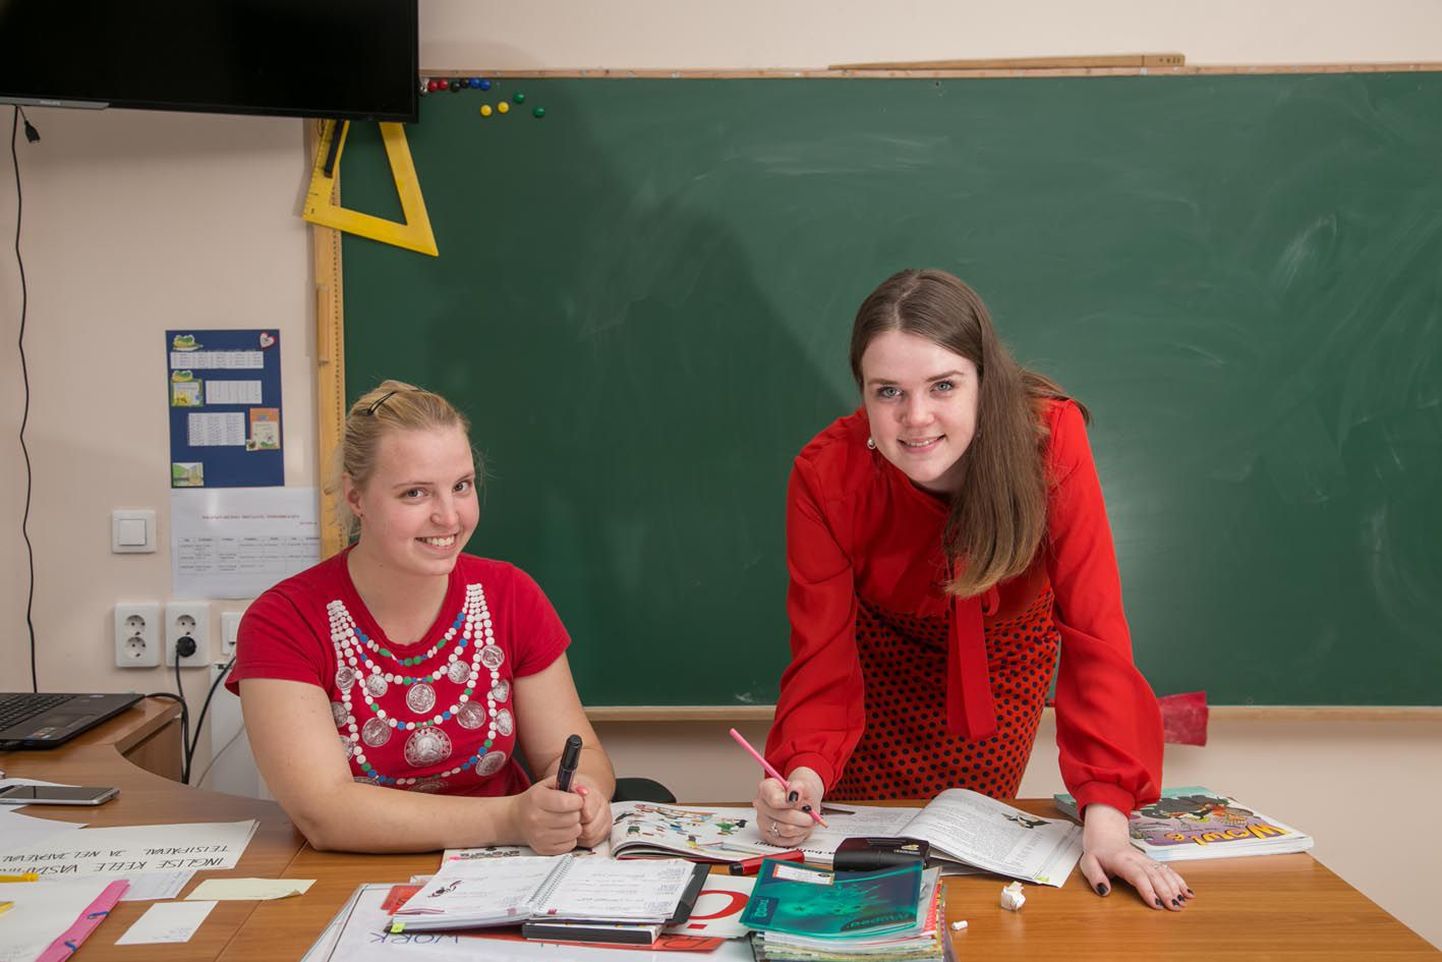 Noored õpetajad Liis Kumpas (vasakul) ja Marii Sii­vard tunnevad rõõmu sellest, et neil on võimalus teha unistuste tööd.